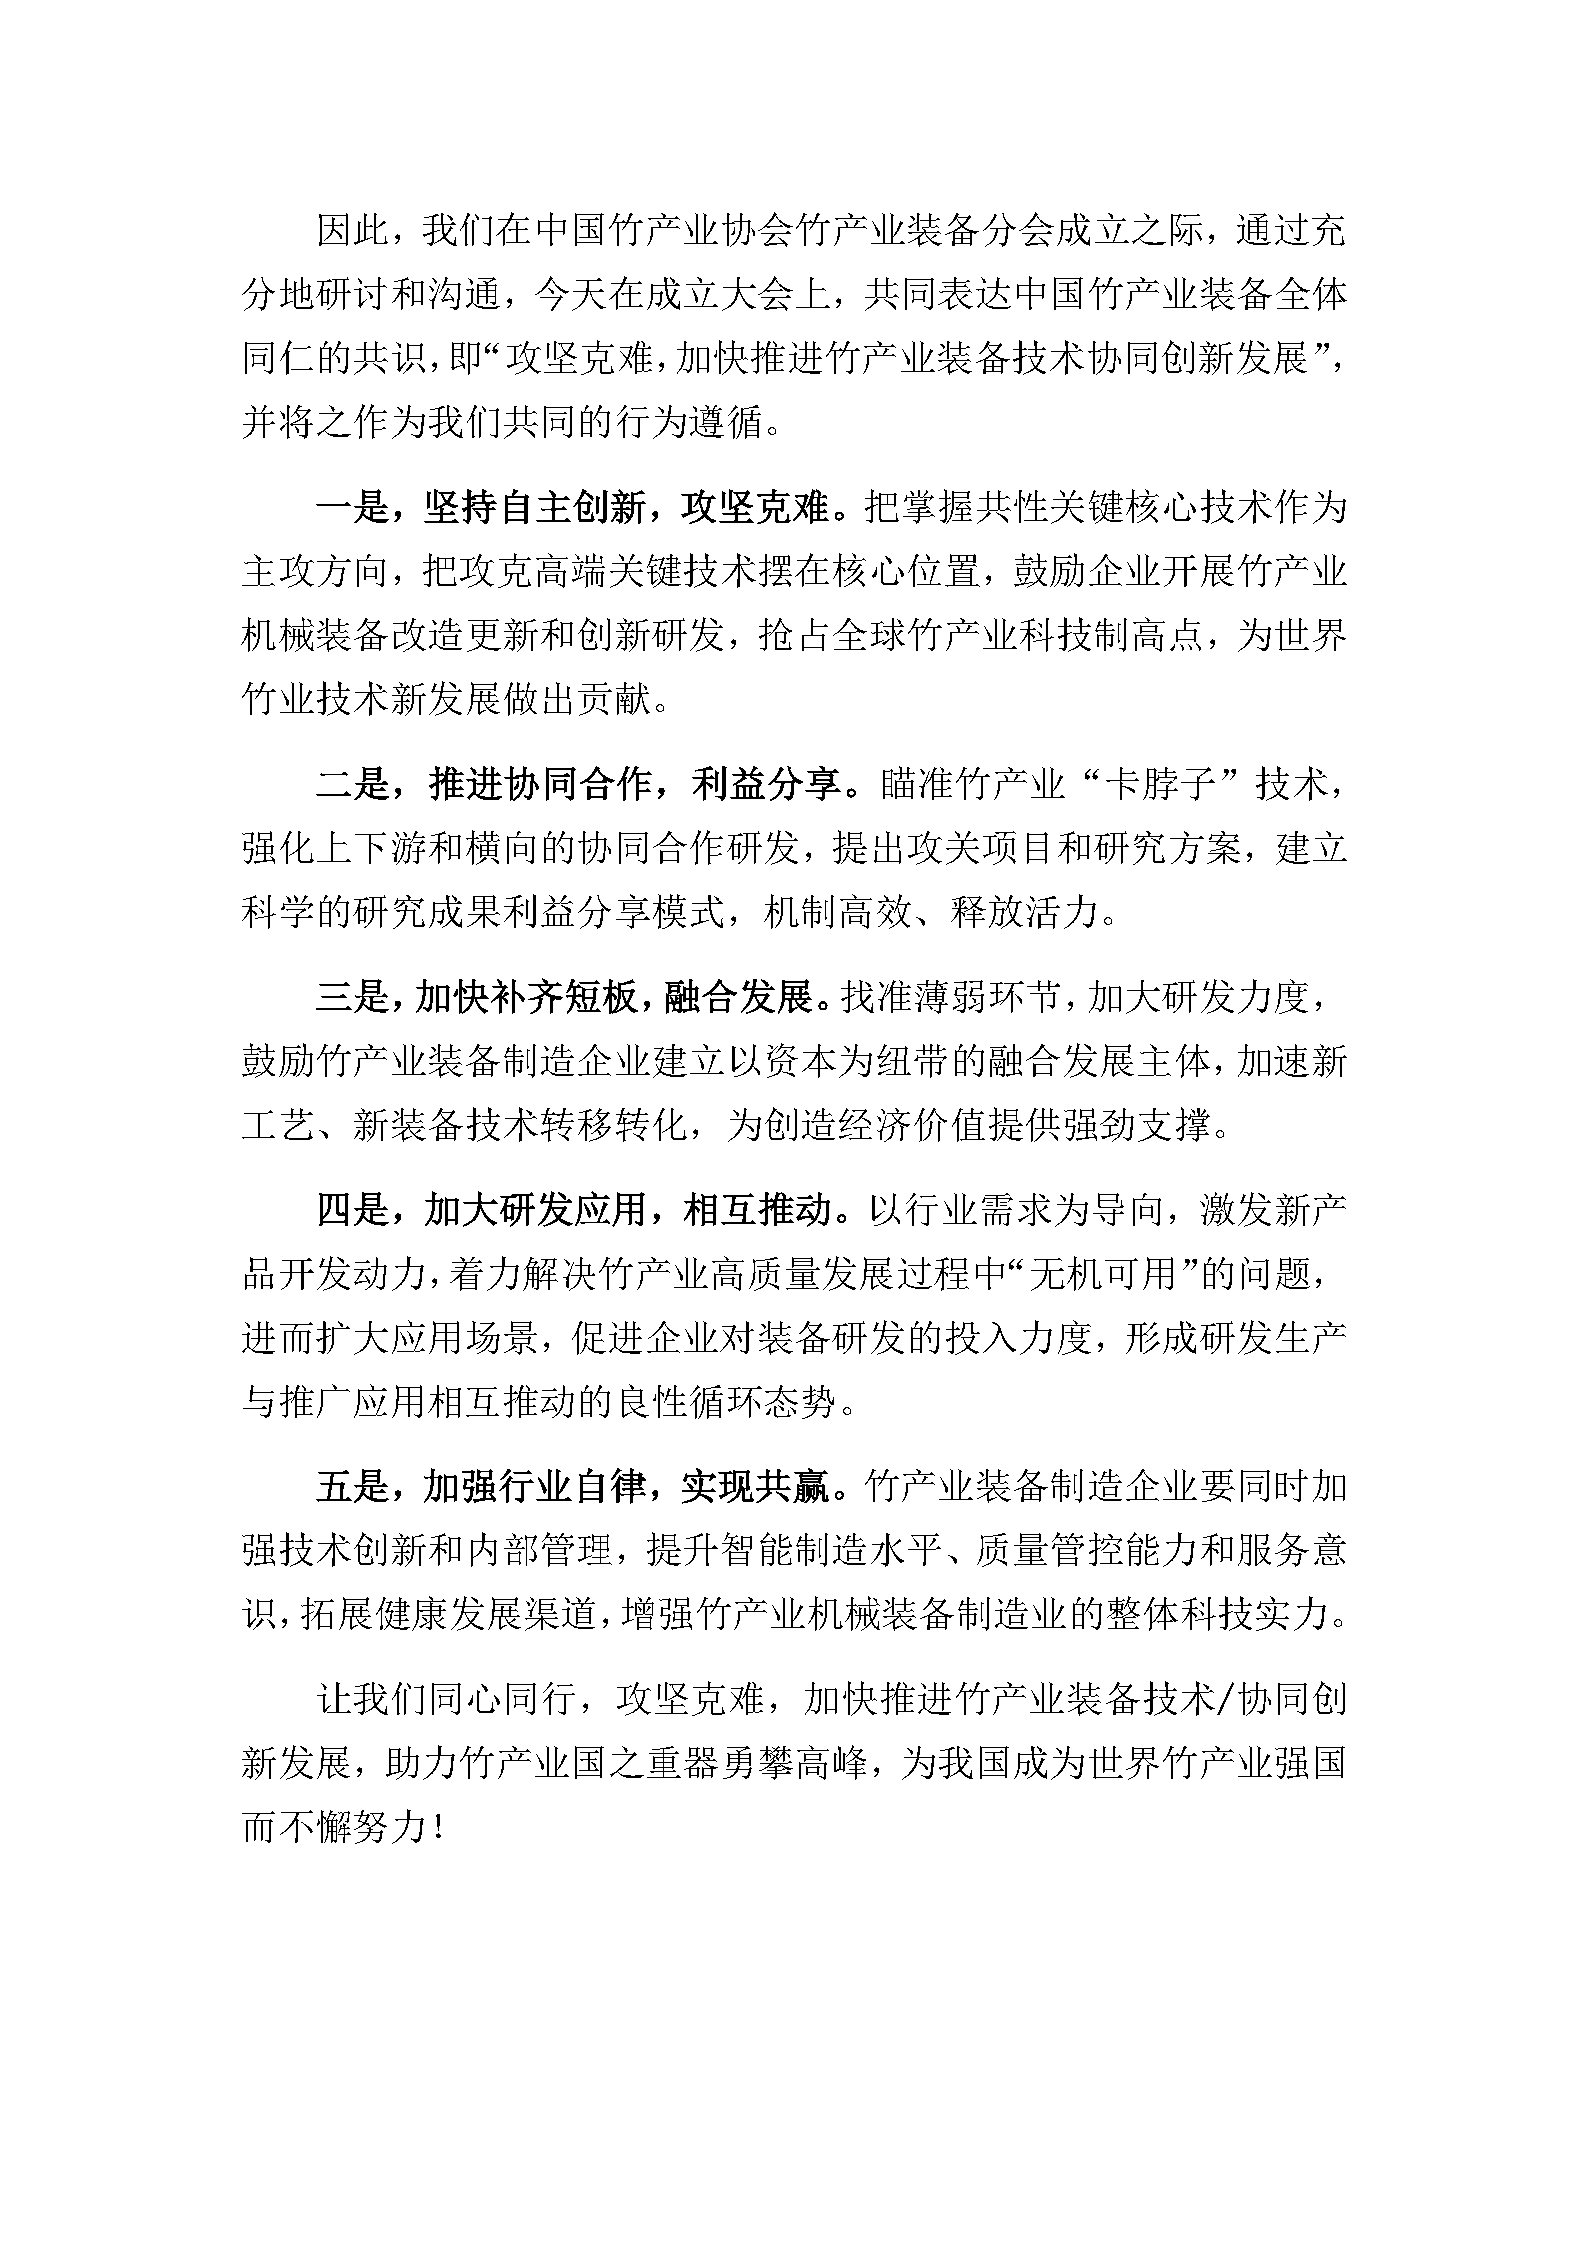 竹装备产业宣言-终稿_Page2.jpg